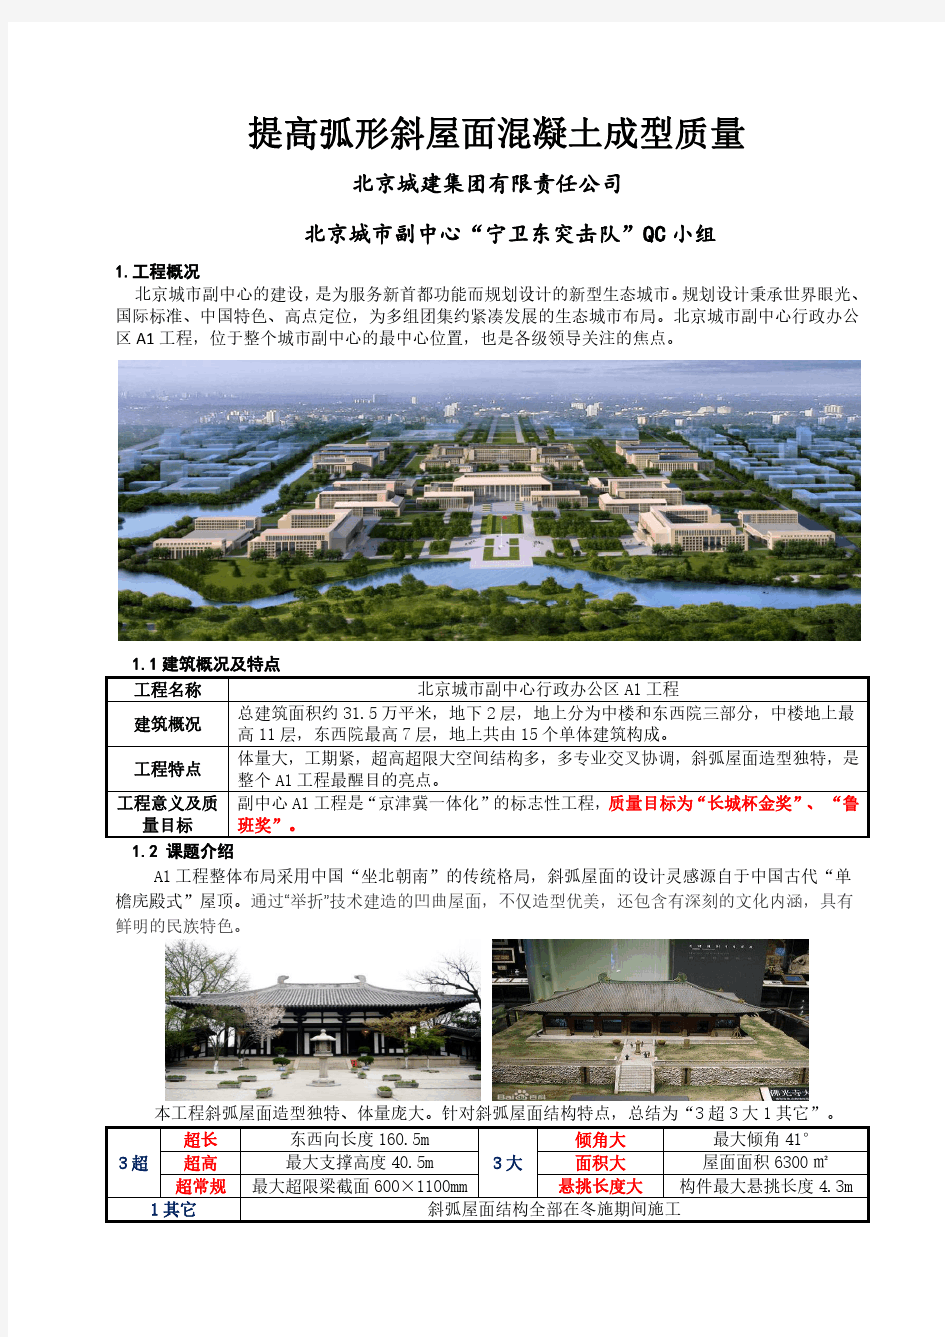 2017qc01001北京城建集团有限责任公司